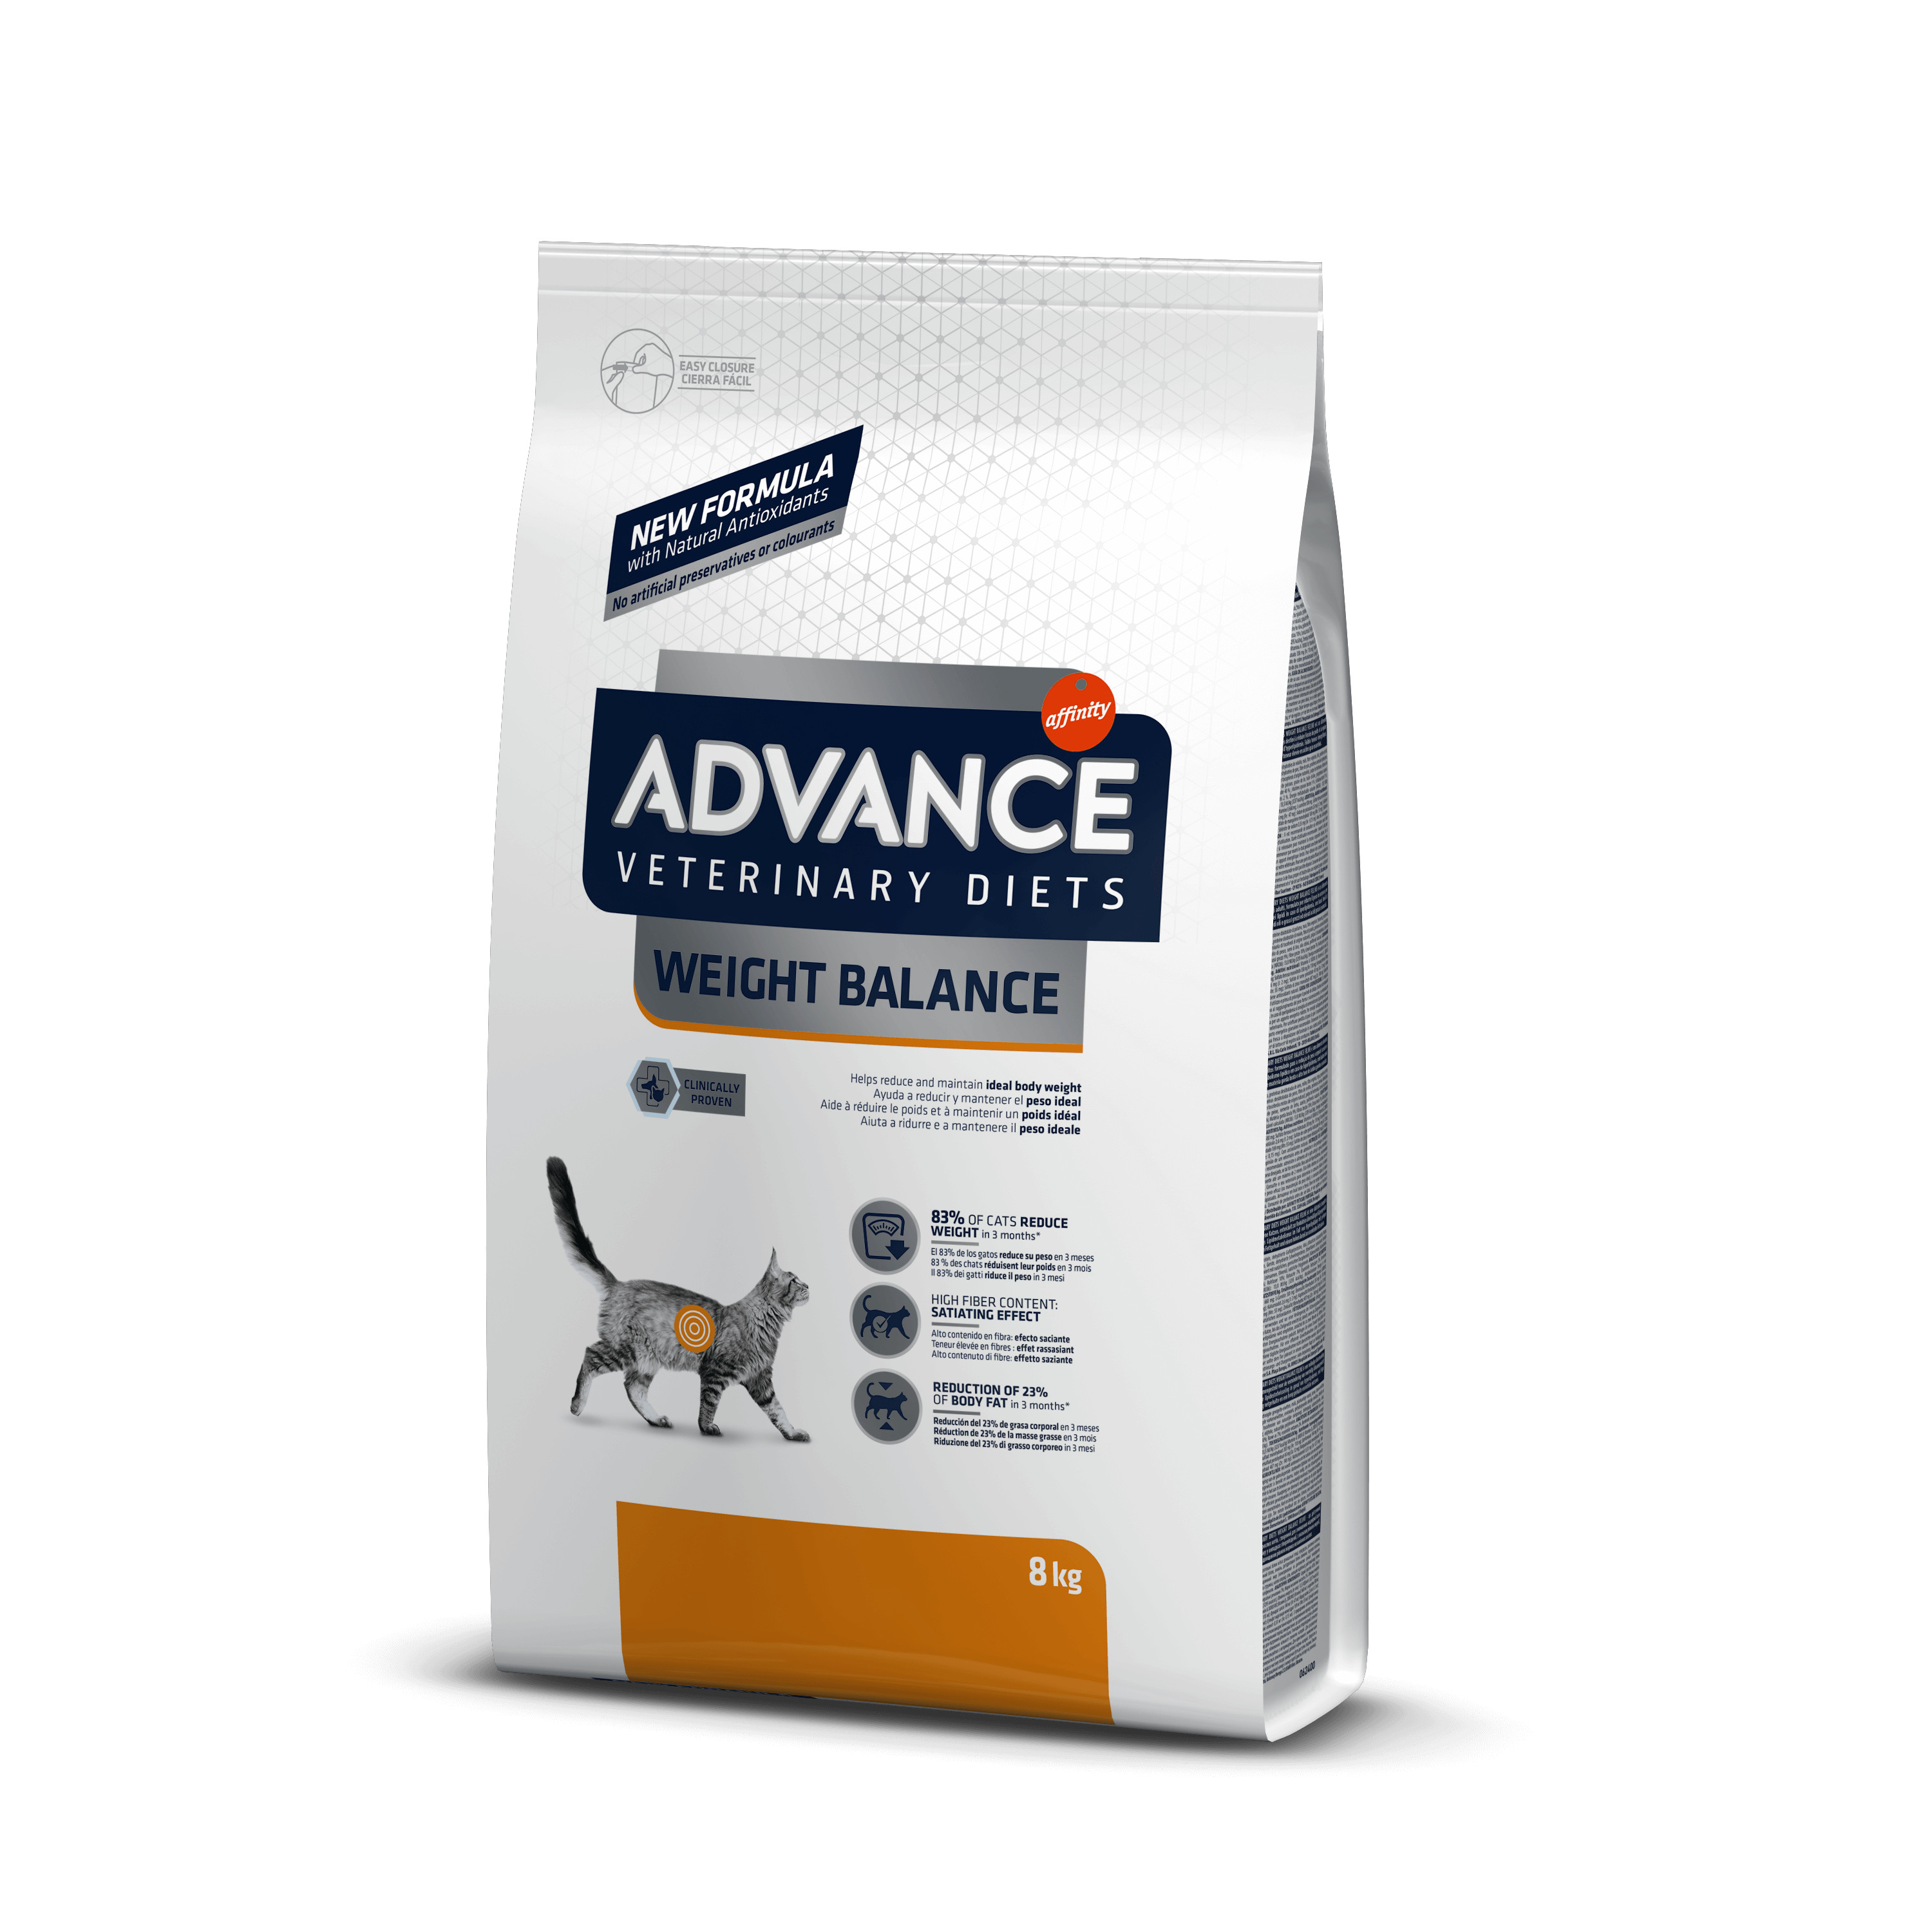 Afbeelding van 8 kg Advance Veterinary Diets Weight Balance kattenvoer